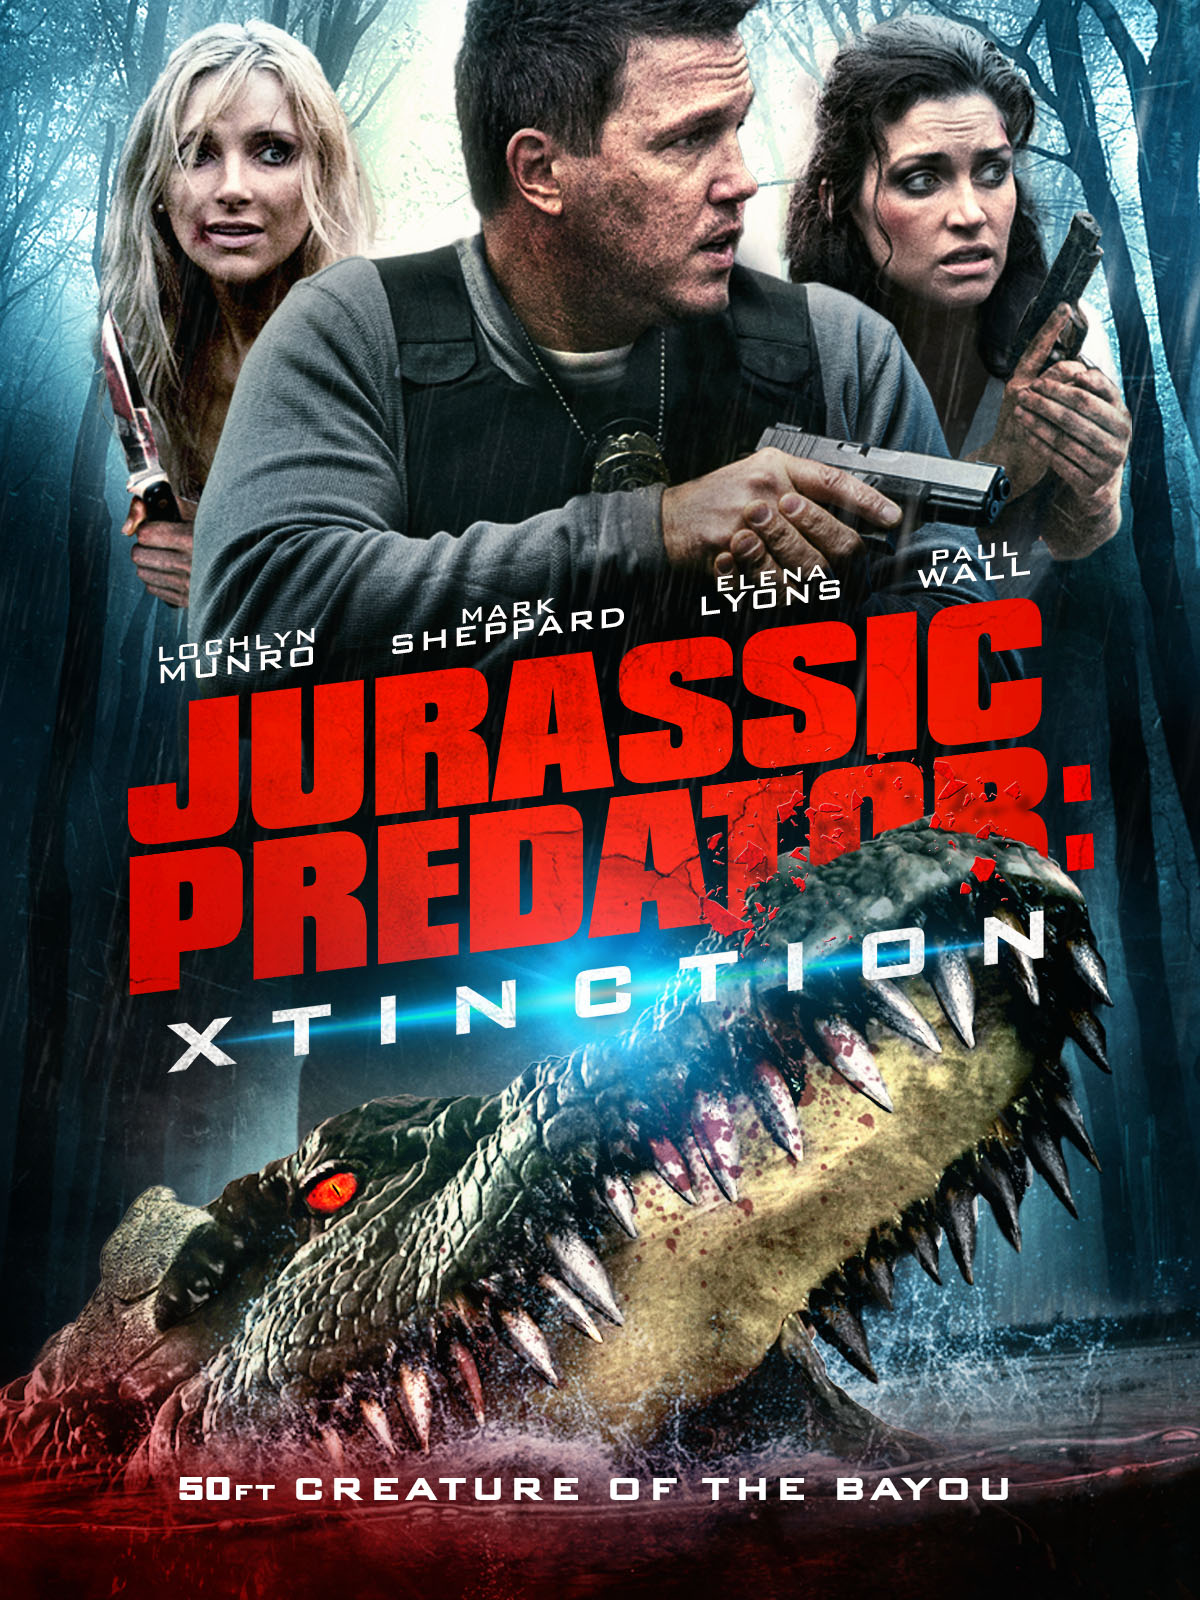 Xtinction Predator X (2014) ทะเลสาป สัตว์นรกล้านปี Lochlyn Munro